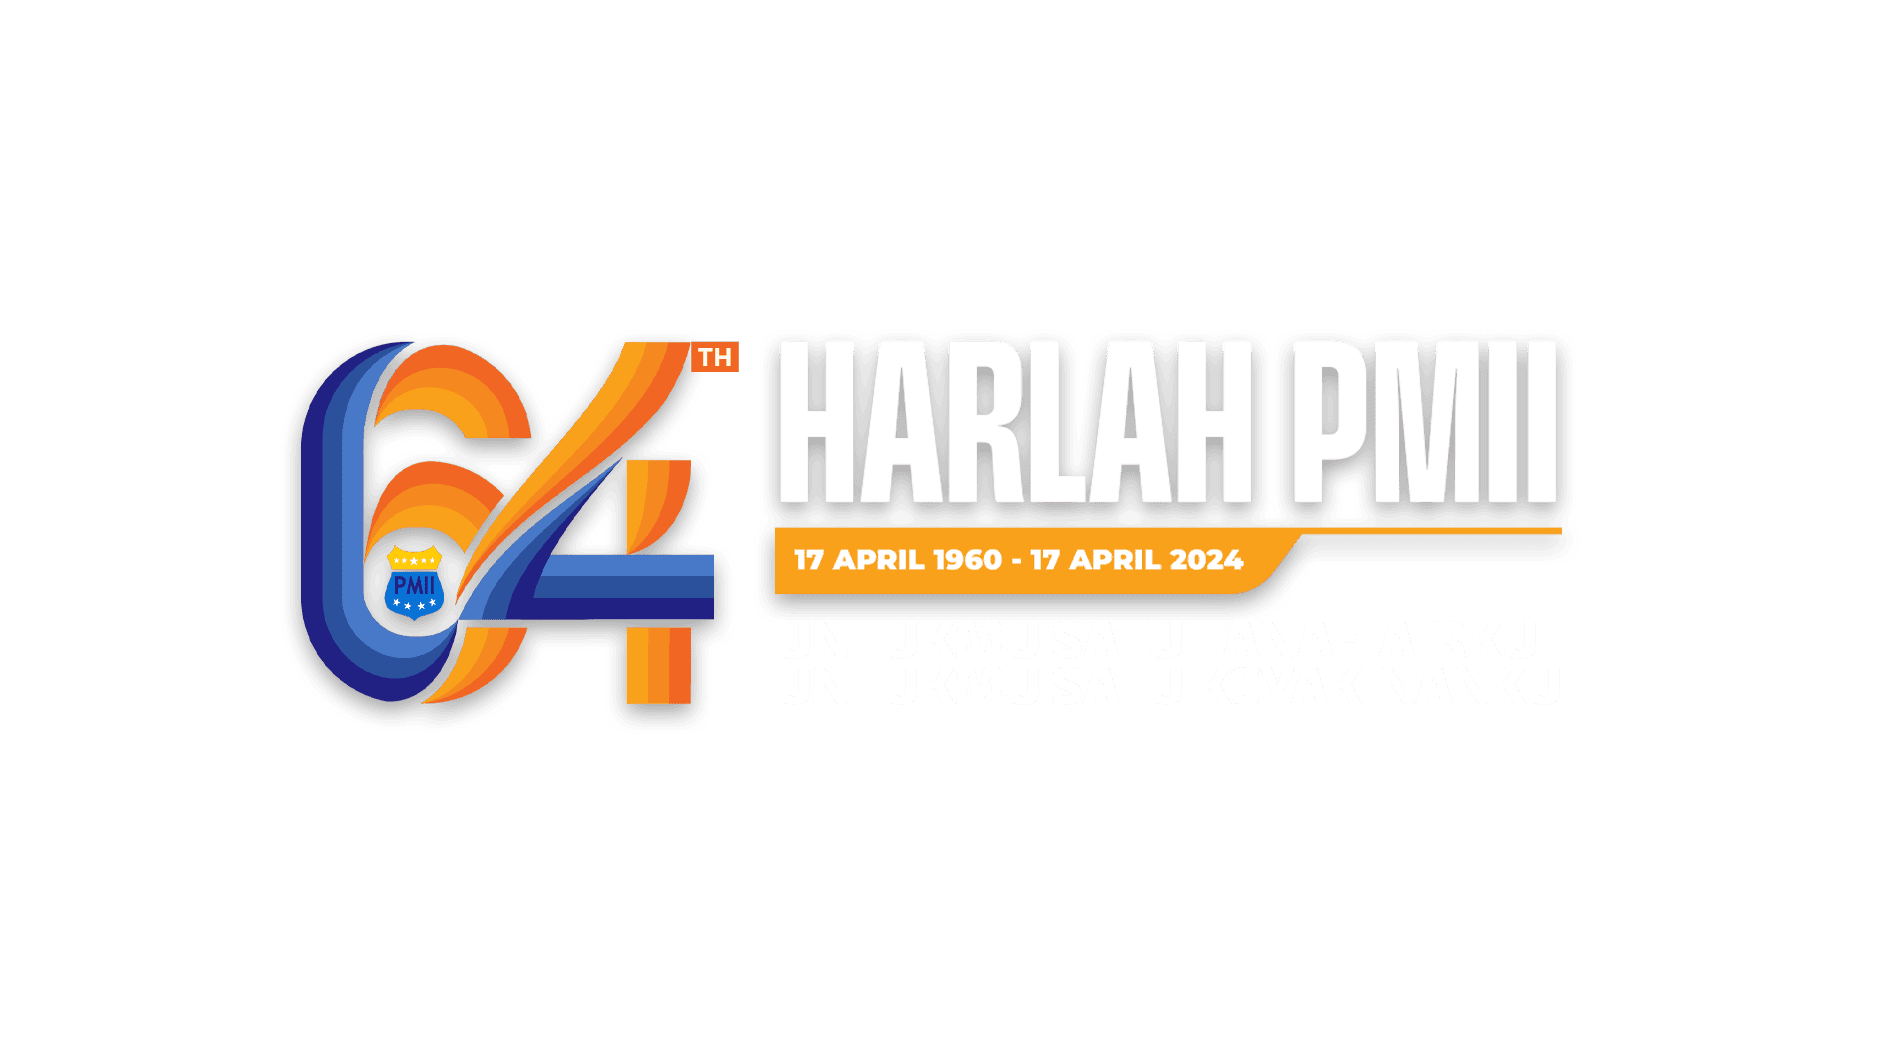 Link Logo Harlah PMII 2024, 64 Tahun Pergerakan Mahasiswa Islam Indonesia